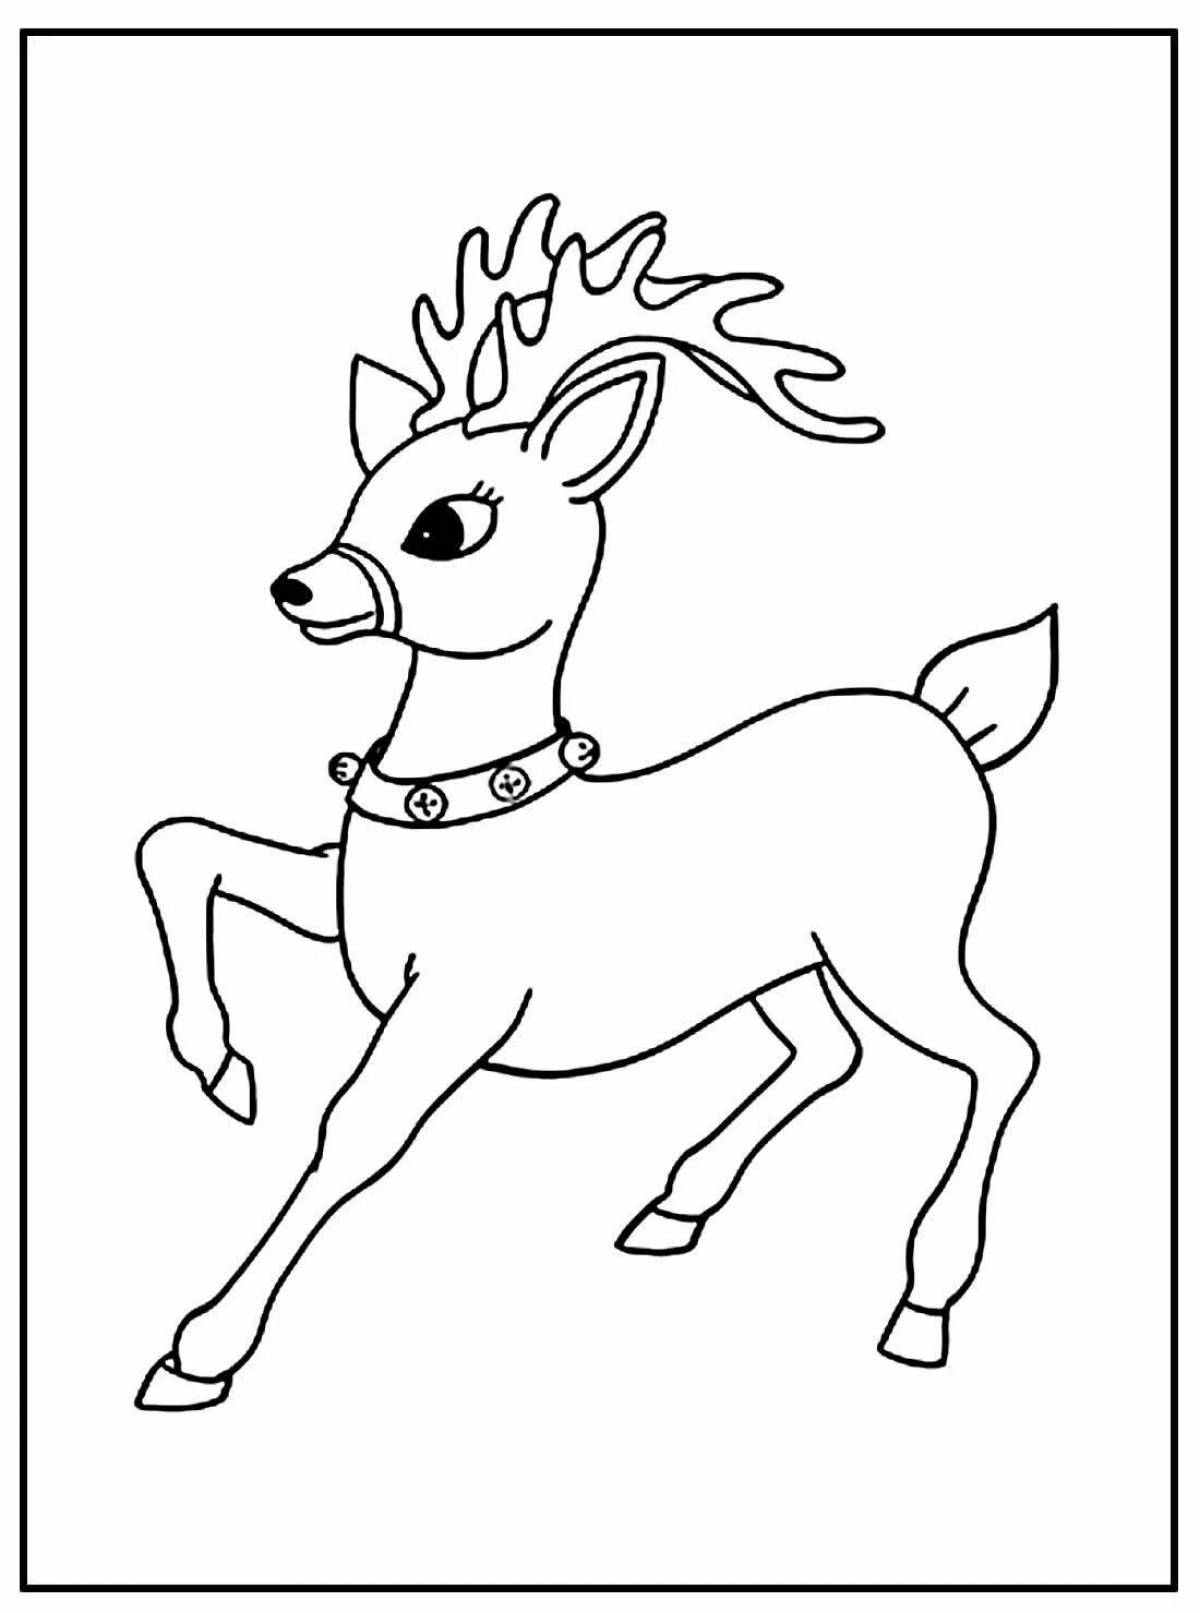 Славная раскраска олень для детей 6-7 лет